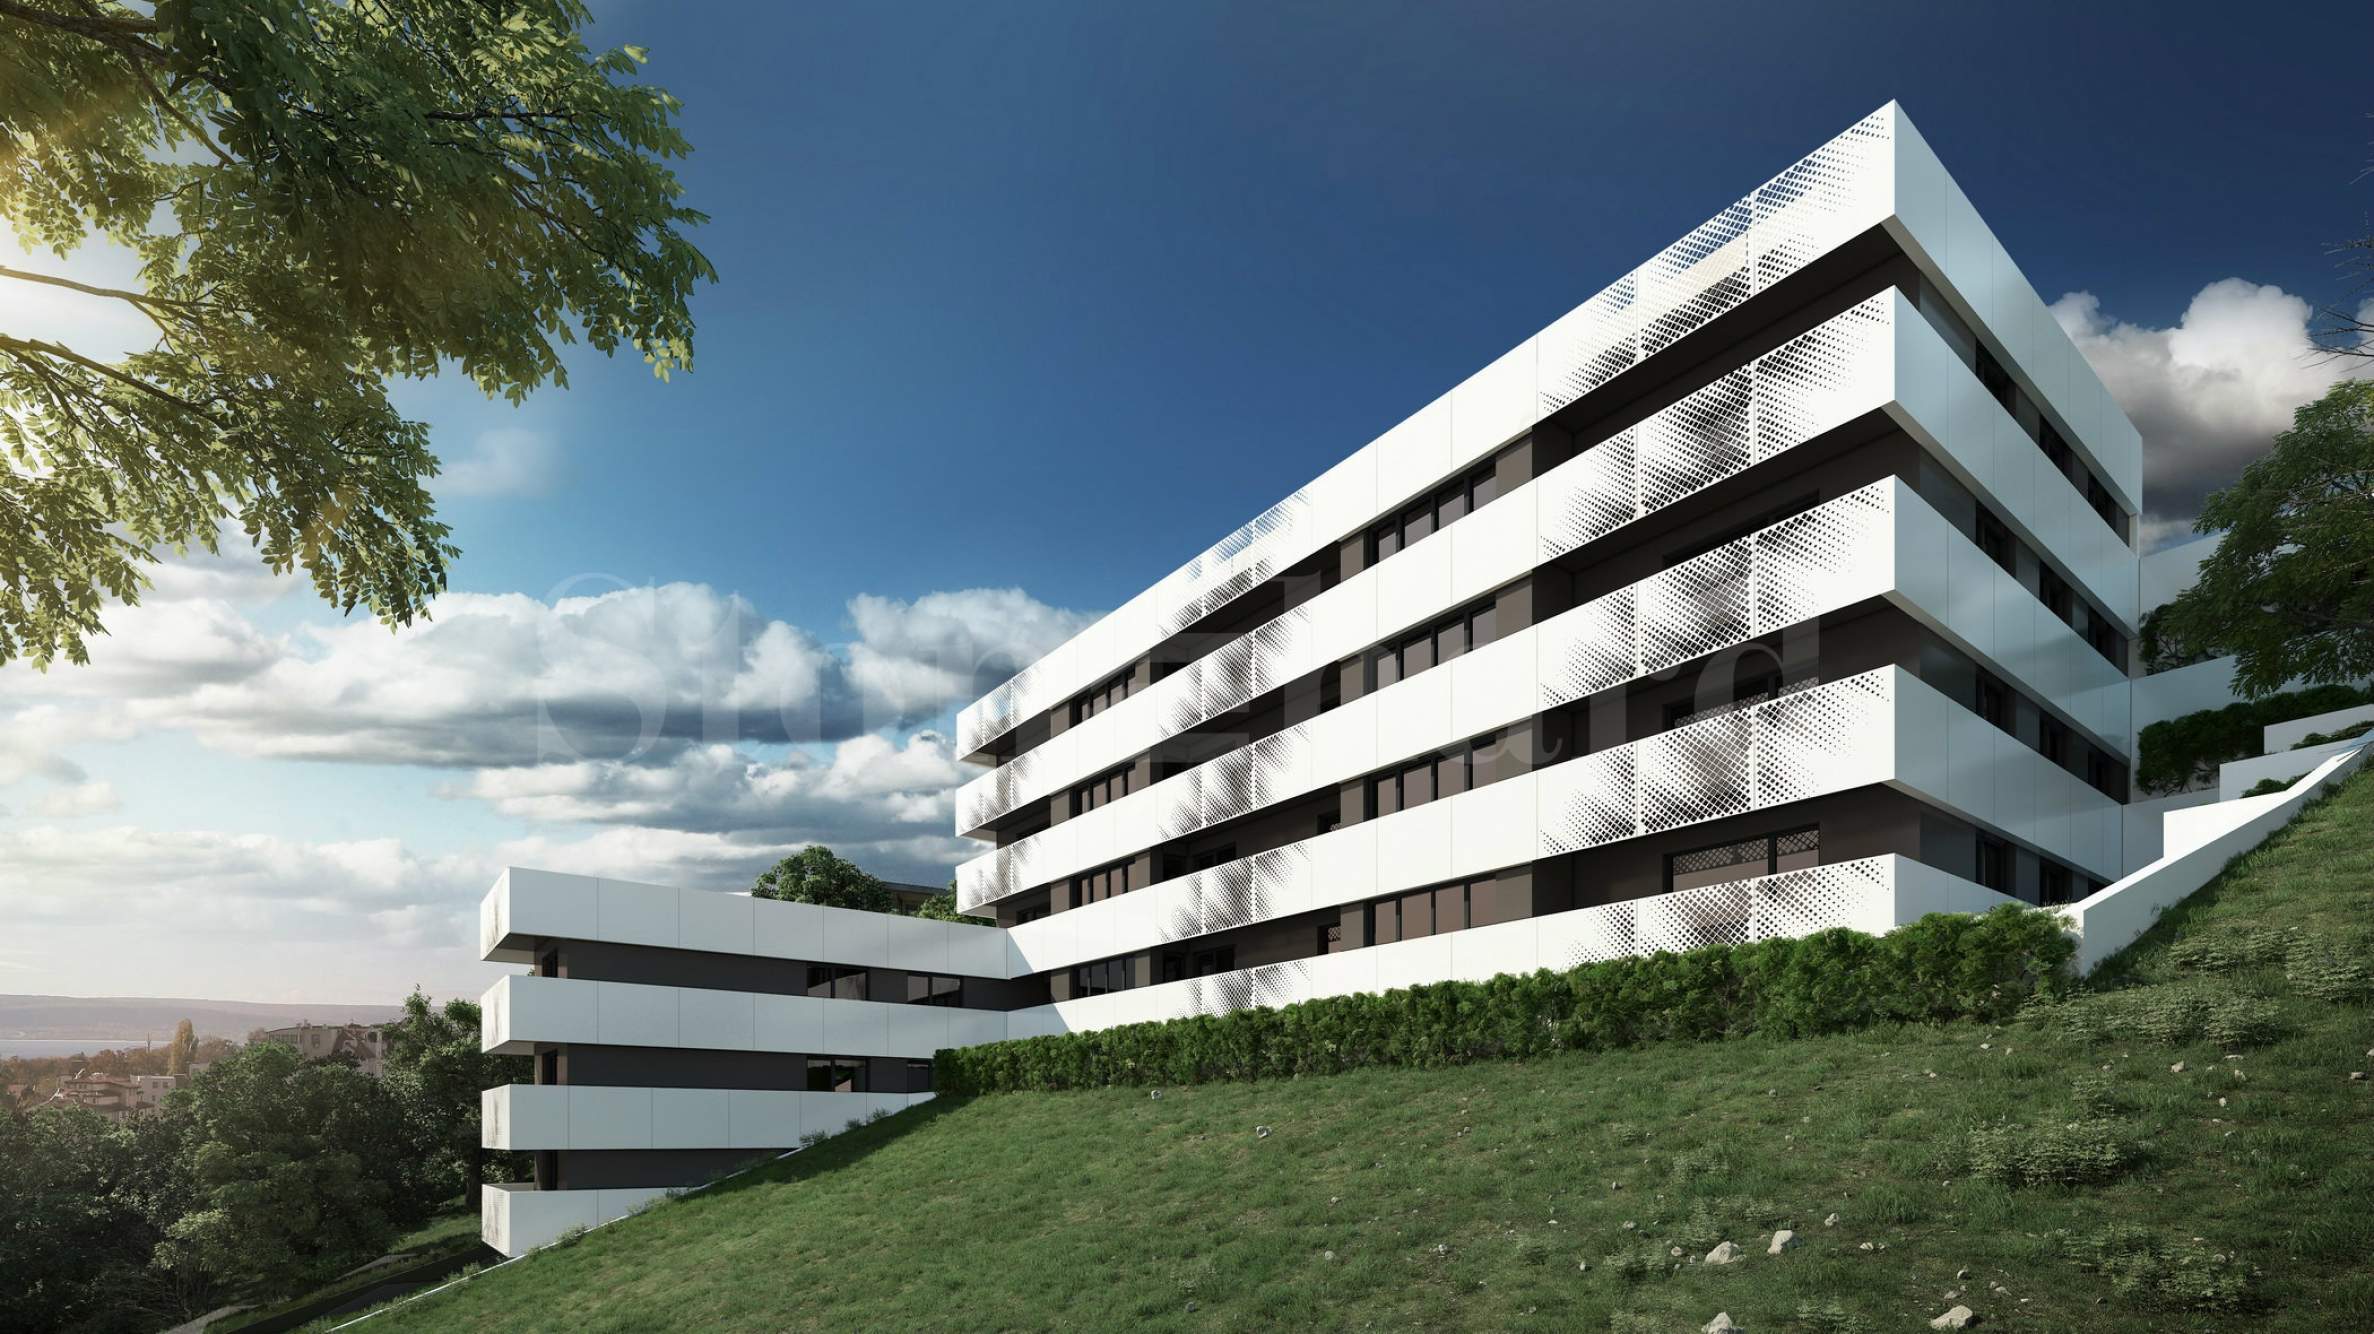 New residential building in the center of Briz quarter1 - Stonehard